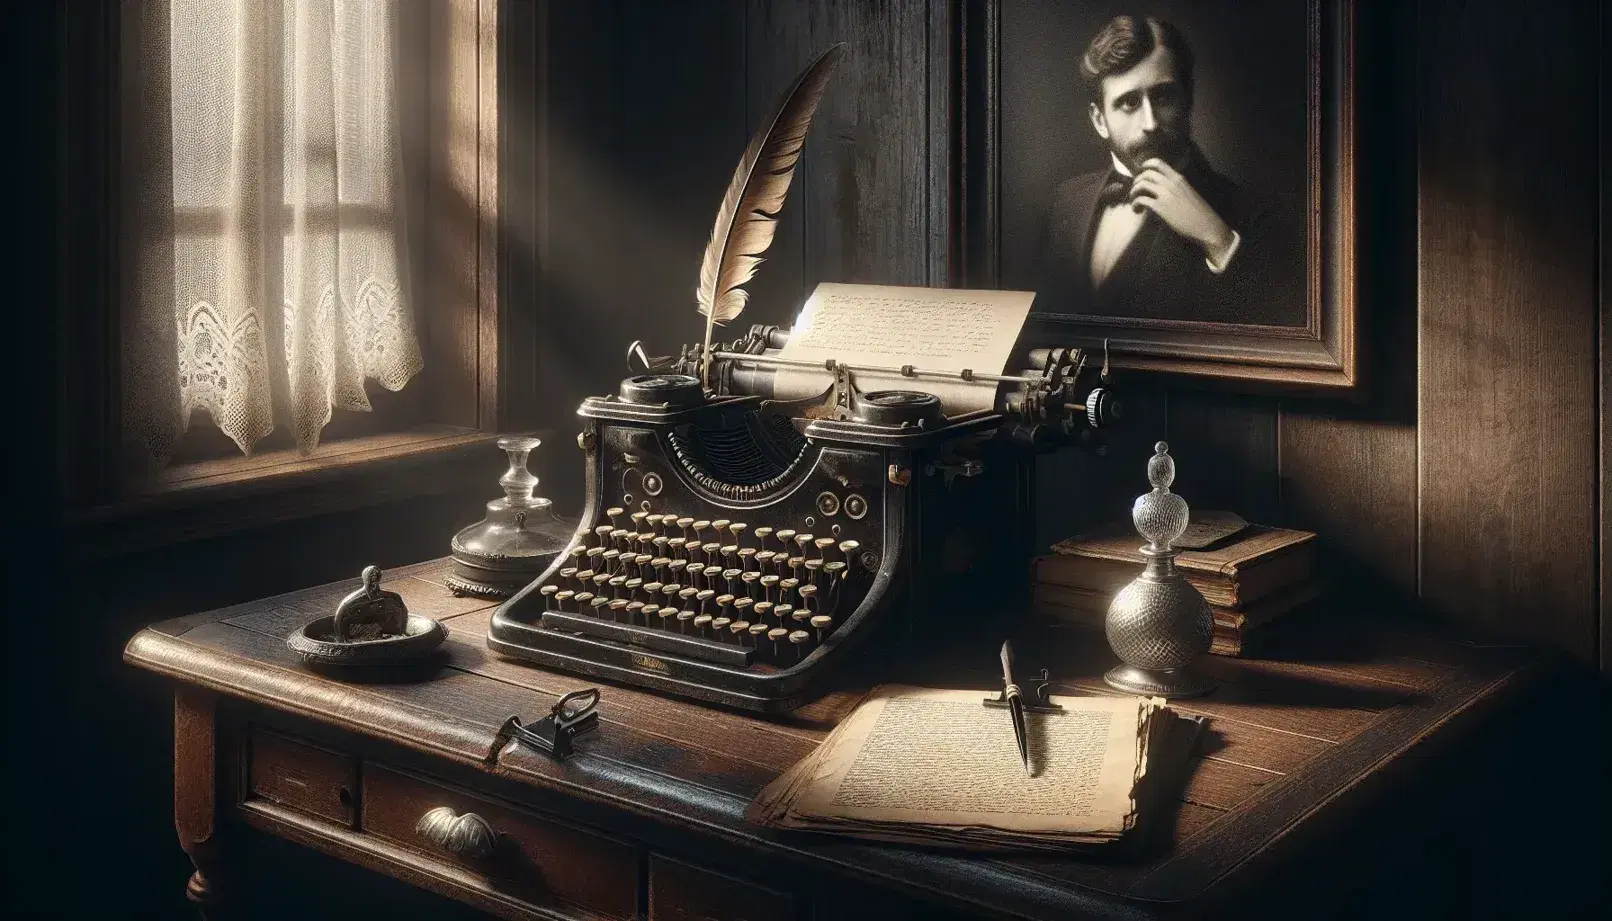 Scrivania vintage in legno scuro con macchina da scrivere antica, calamaio, piuma e ritratto in bianco e nero in una stanza d'epoca.